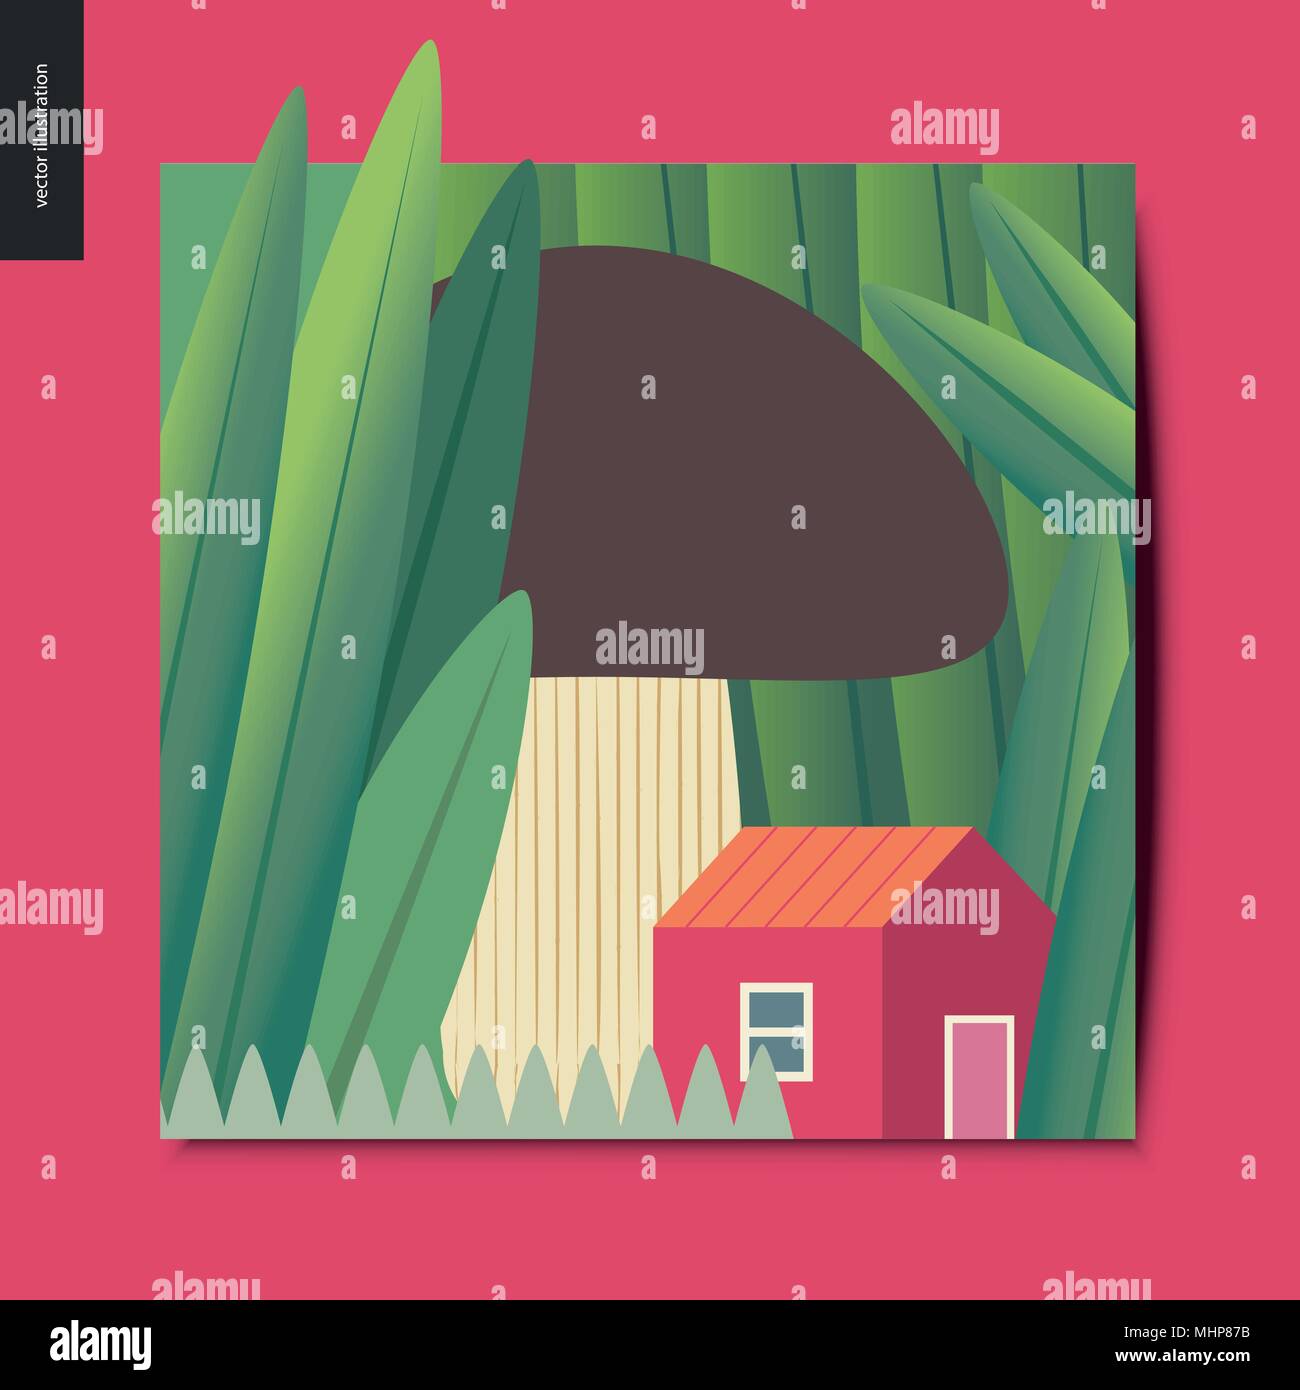 Einfache Dinge - Konzept Abbildung eines kleinen roten Haus unter der Pilzzucht zwischen riesigen Gras Trunks, Sommer Postkarte, Vektor, Abbildung Stock Vektor